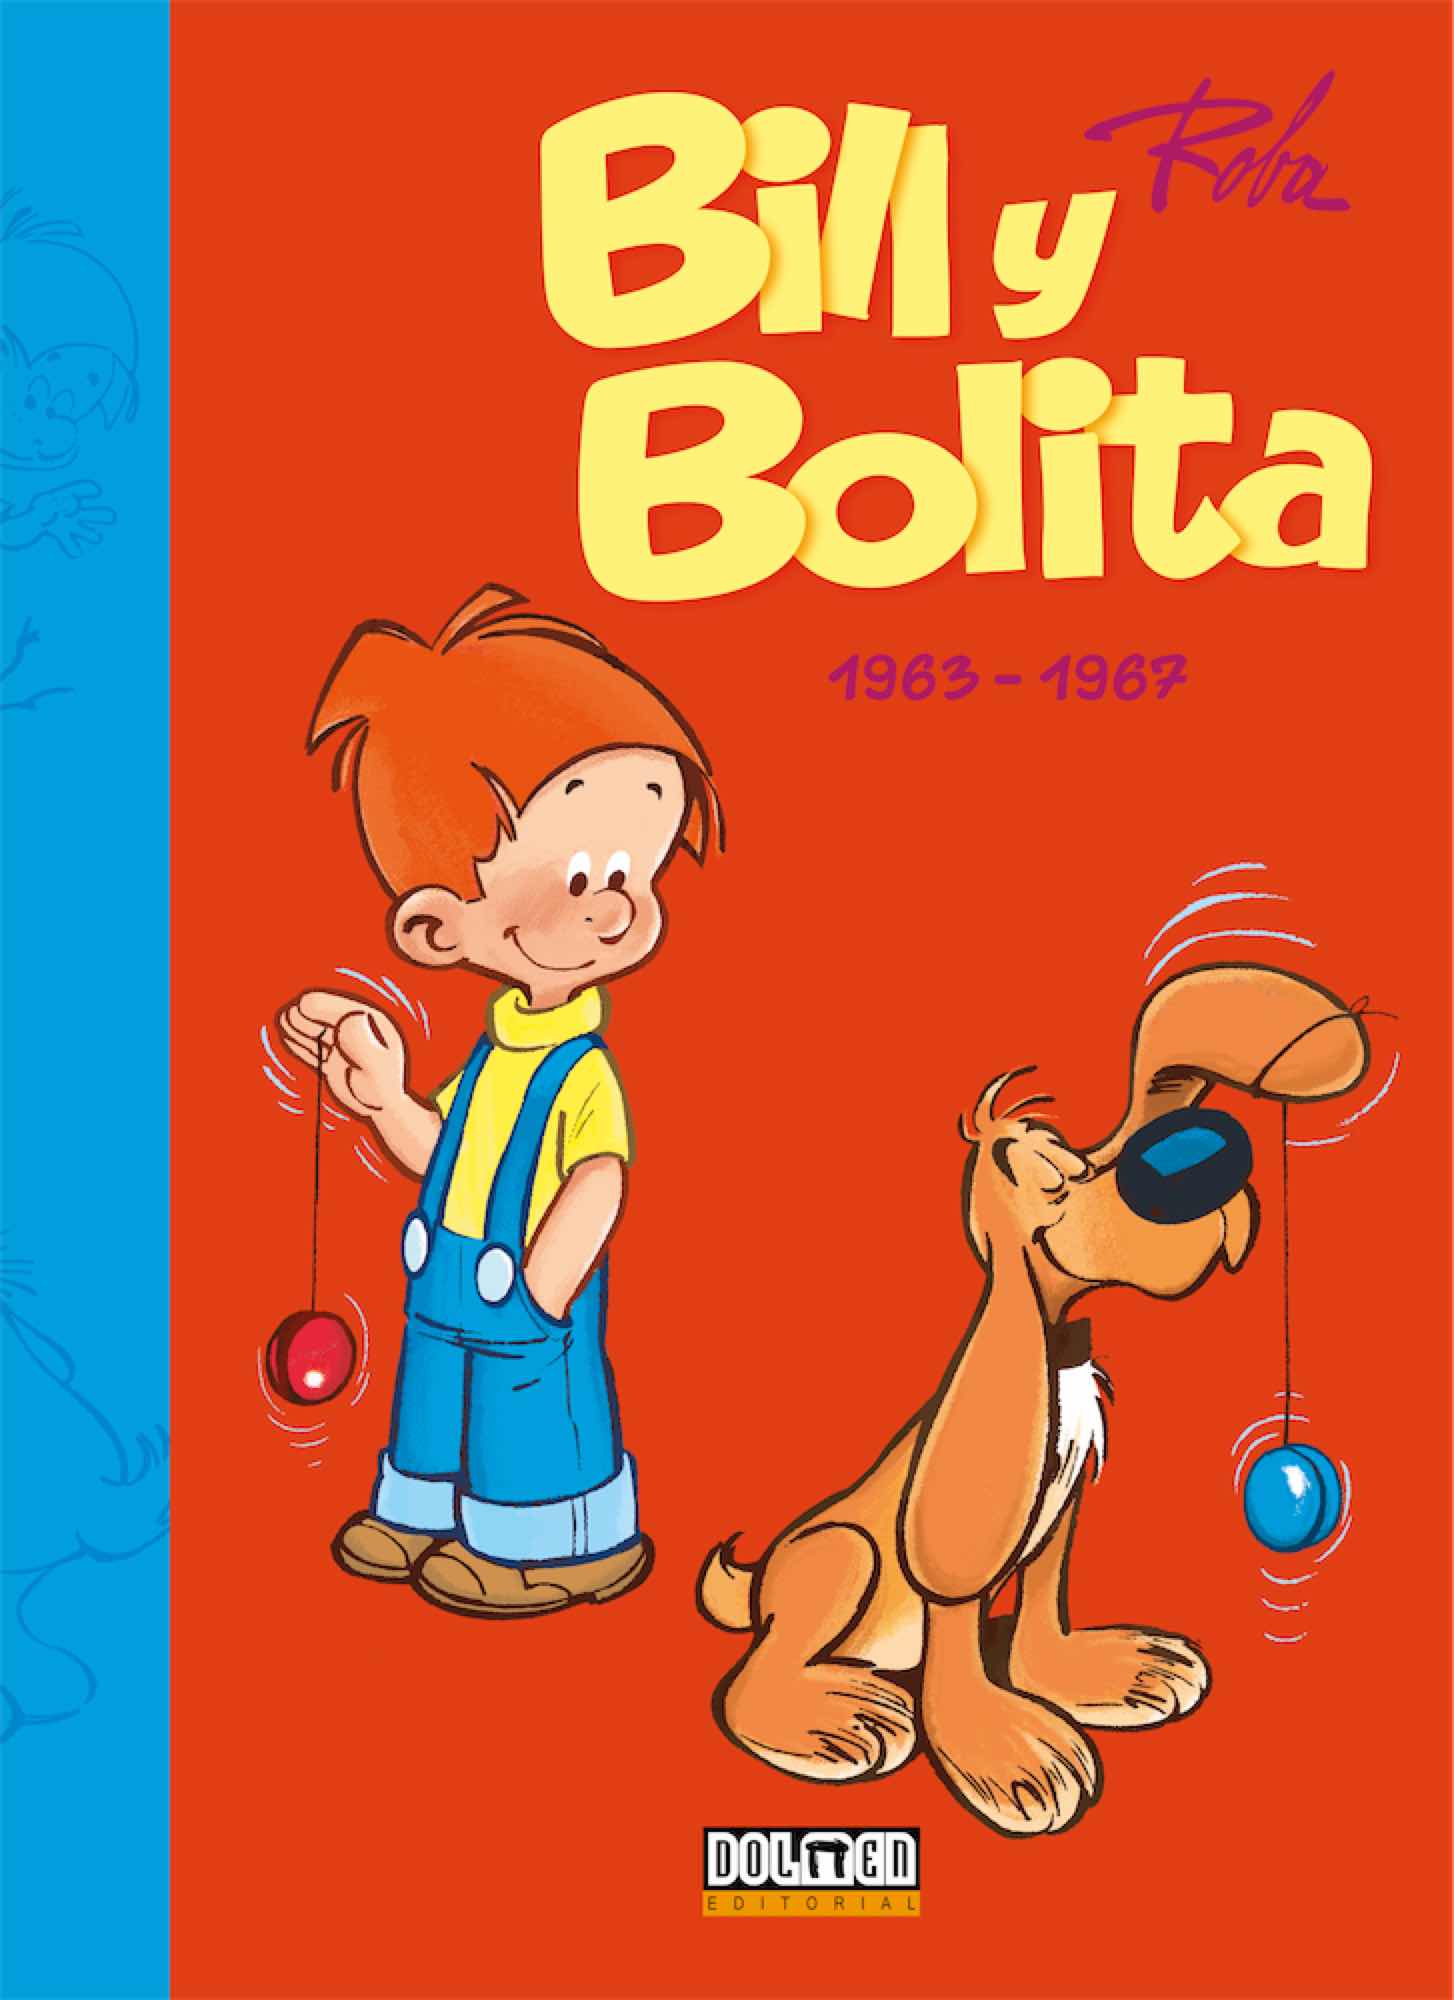 BILL Y BOLITA 02 (1963-1967)